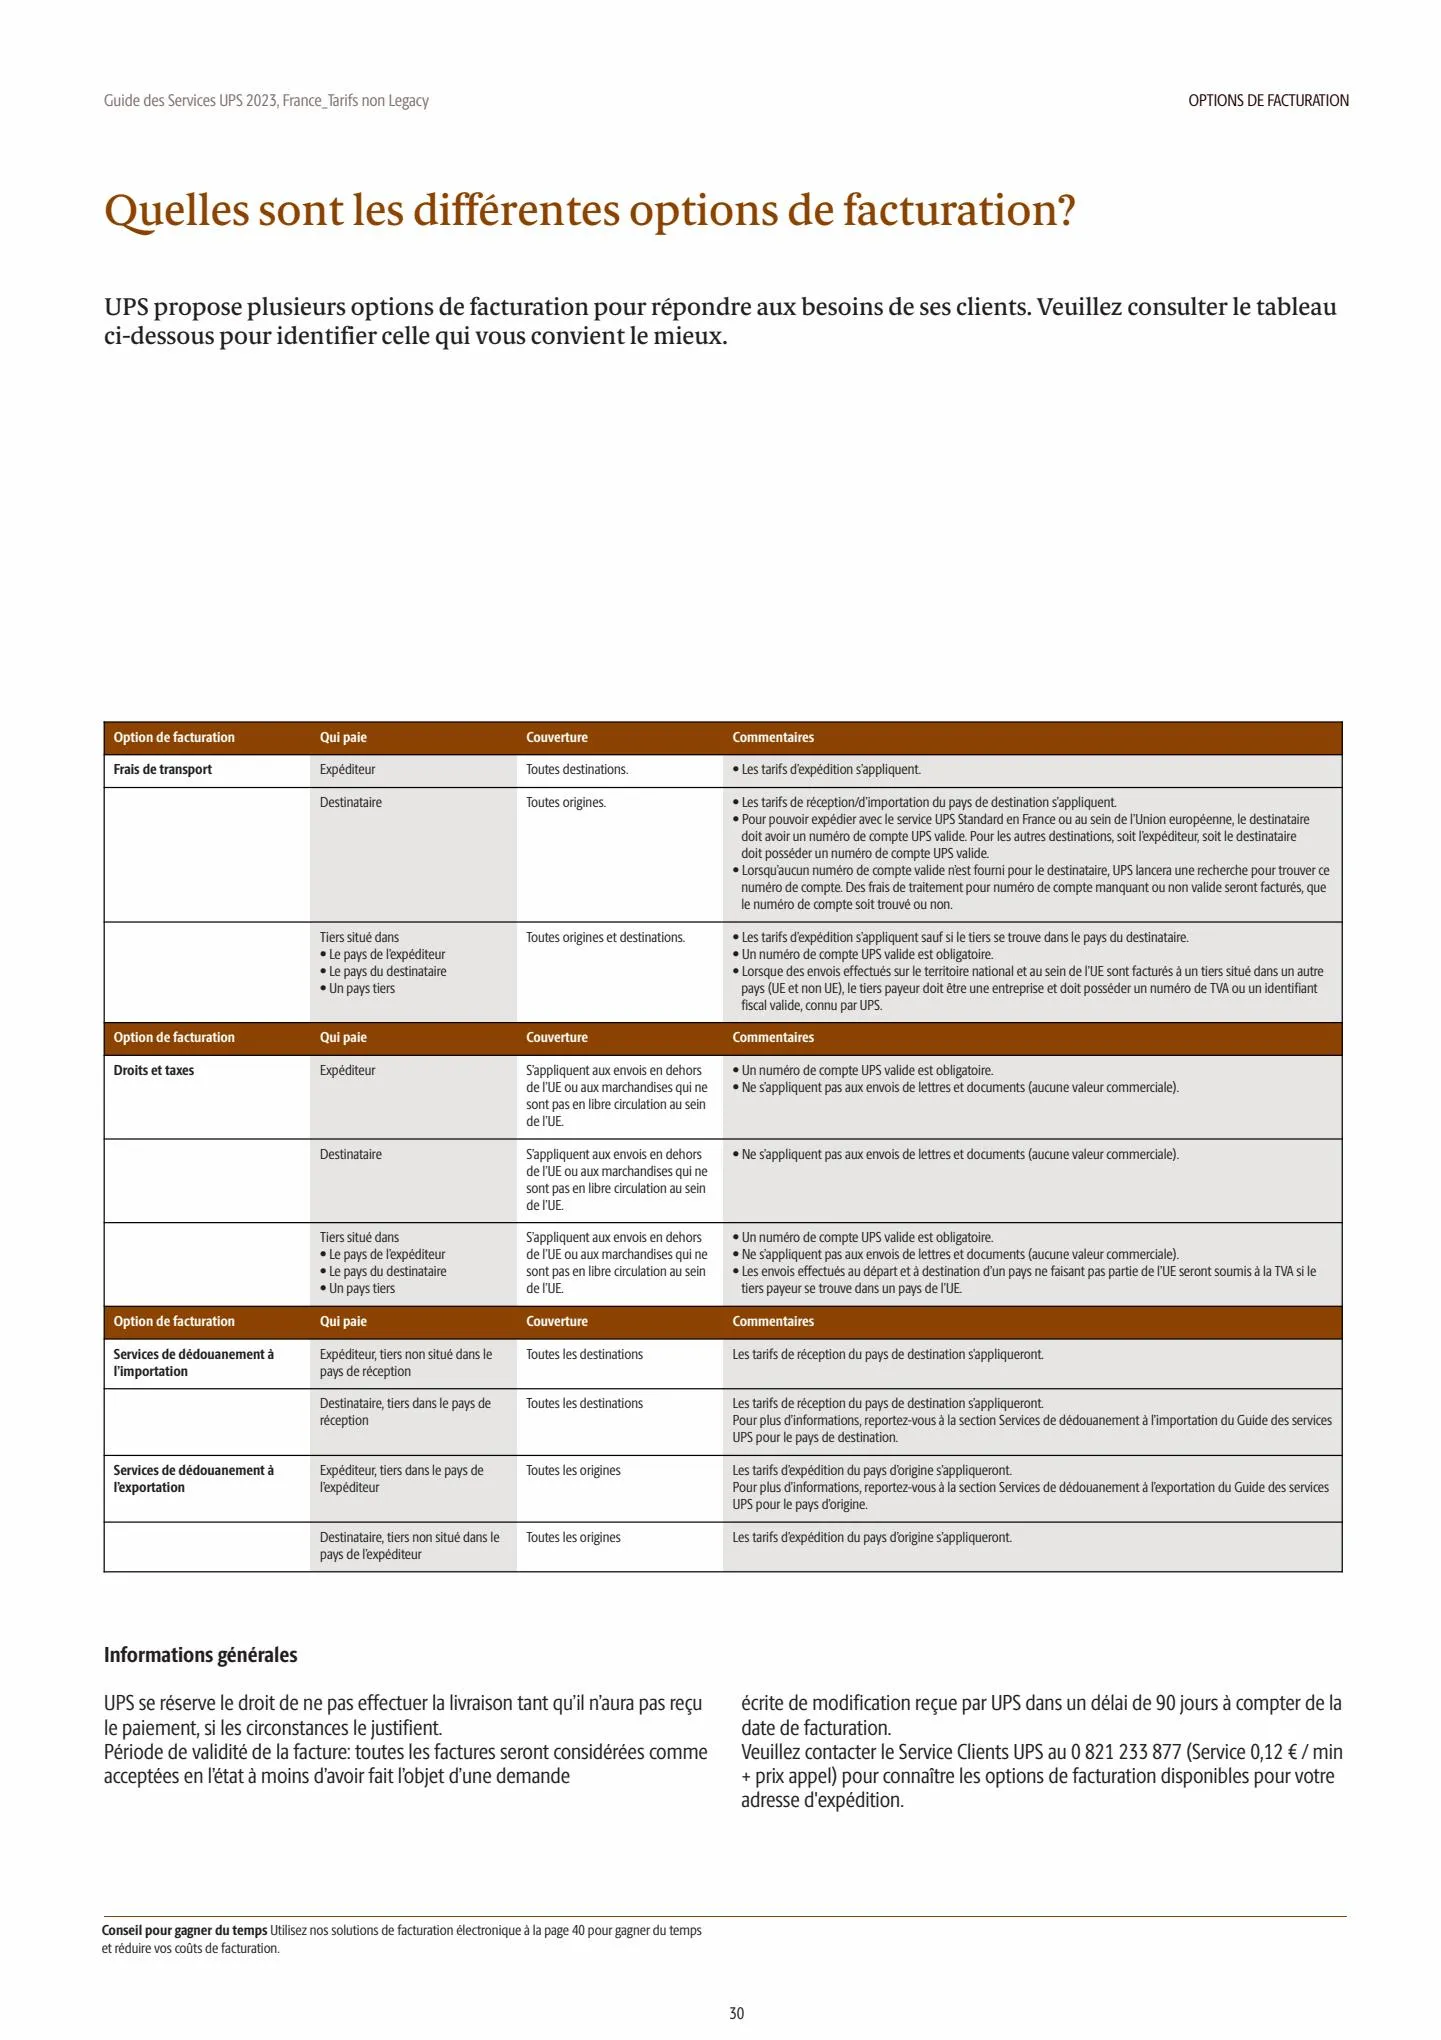 Catalogue Guide des Services 2023, page 00030